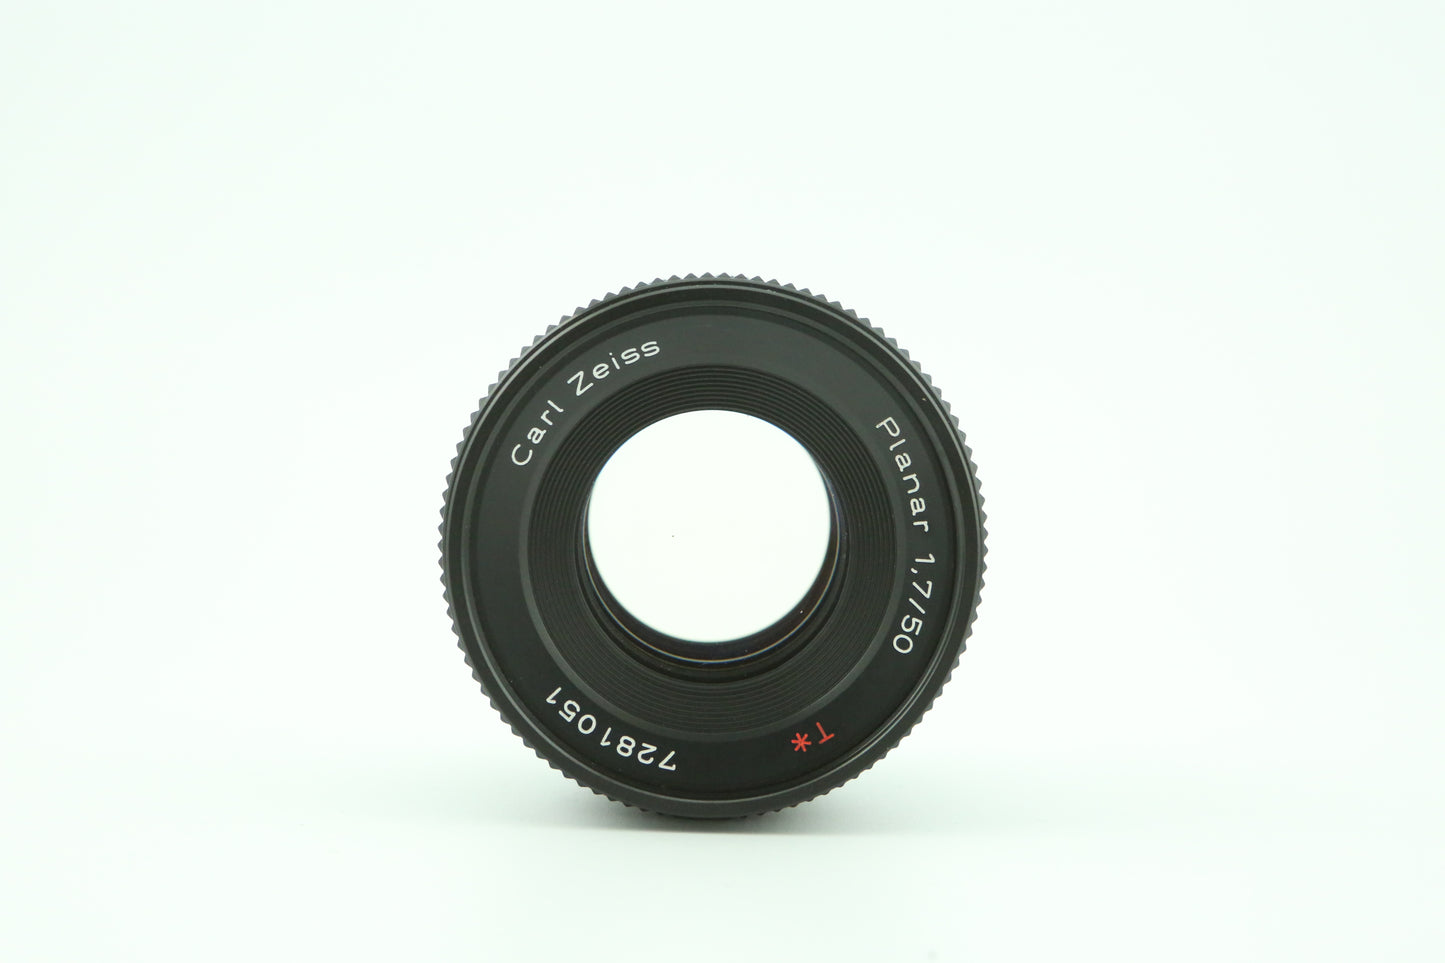 Carl Zeiss 50mm f1.7